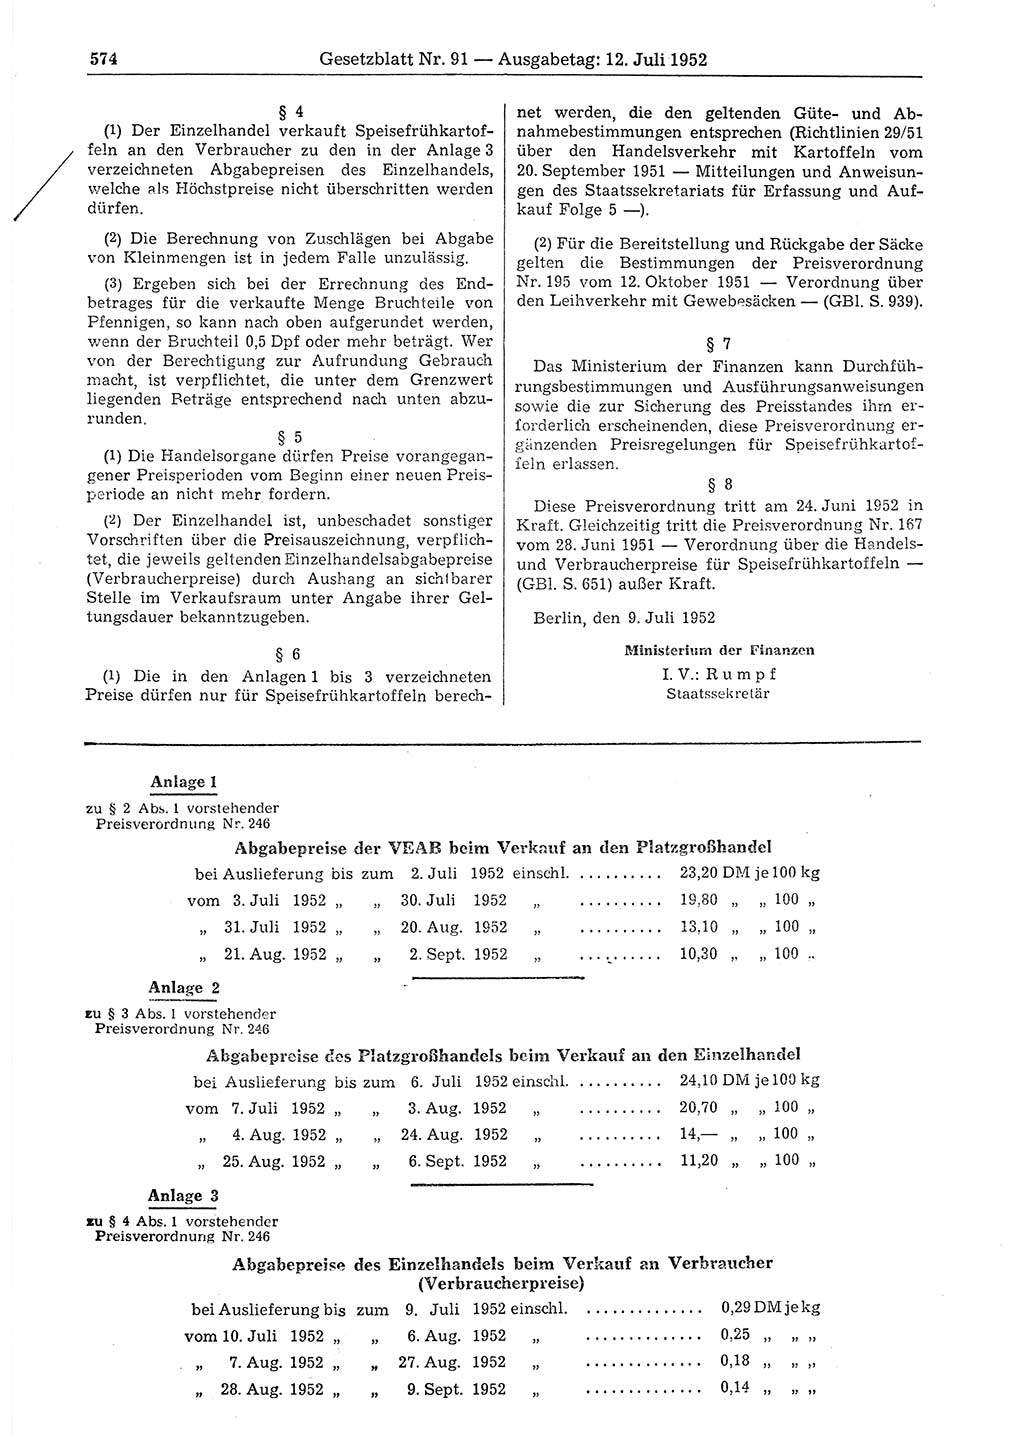 Gesetzblatt (GBl.) der Deutschen Demokratischen Republik (DDR) 1952, Seite 574 (GBl. DDR 1952, S. 574)